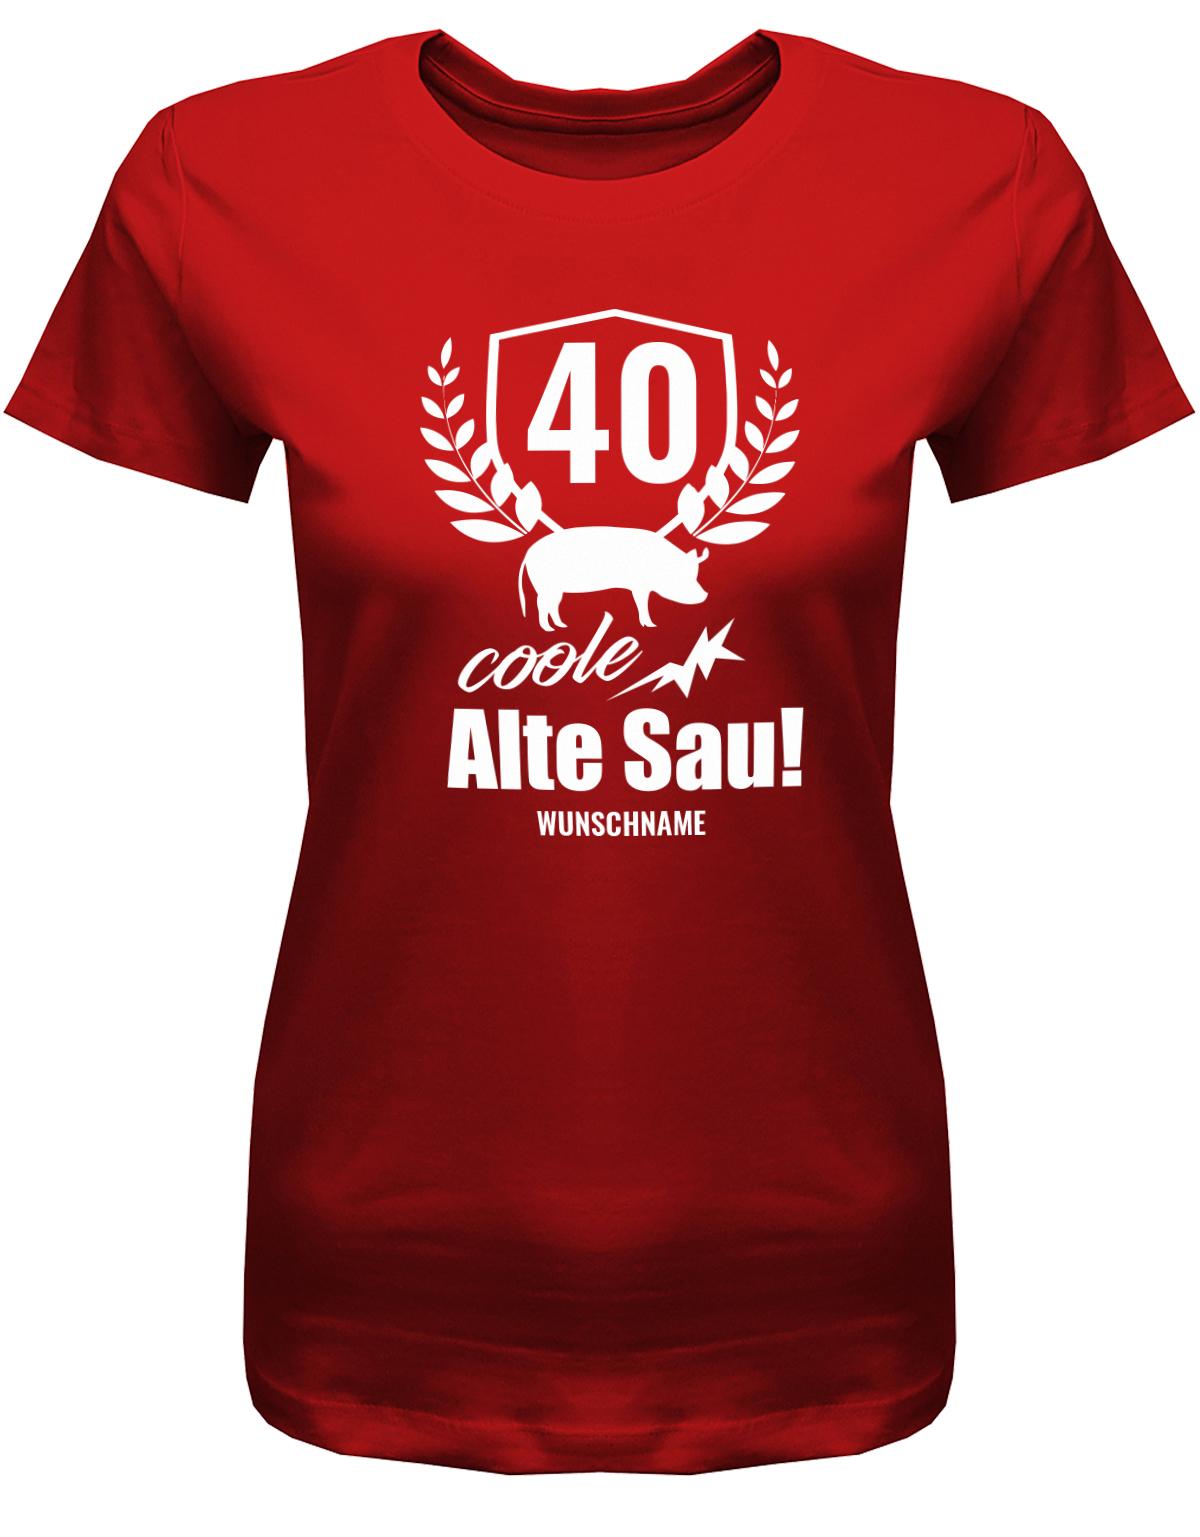 Lustiges T-Shirt zum 40. Geburtstag für die Frau Bedruckt mit 40 coole alte Sau personalisiert mit Name. Rot